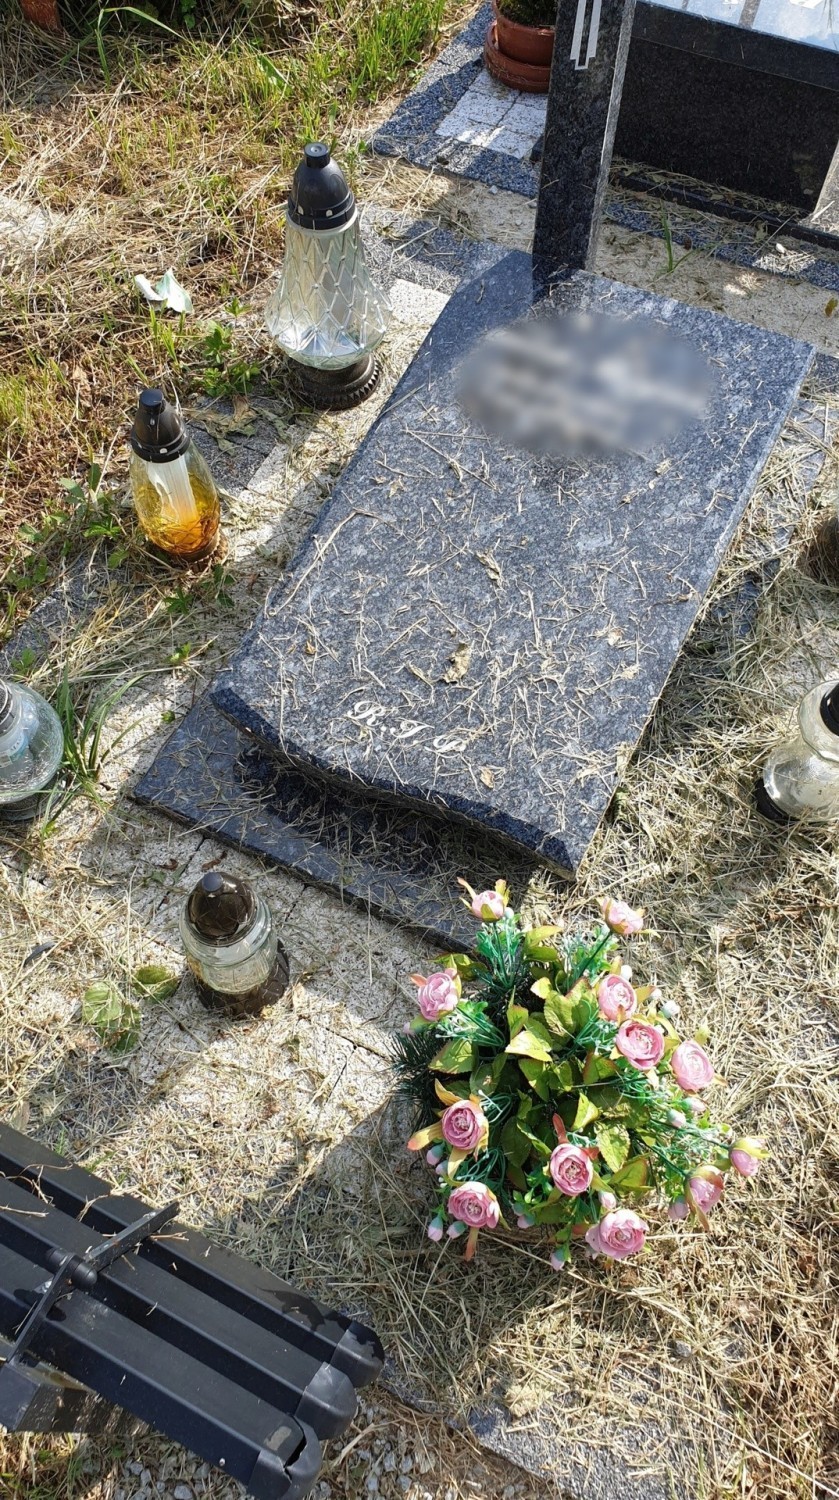 Siano na grobach w Opolu-Półwsi. Bliscy zmarłych oburzeni. Administracja przeprasza